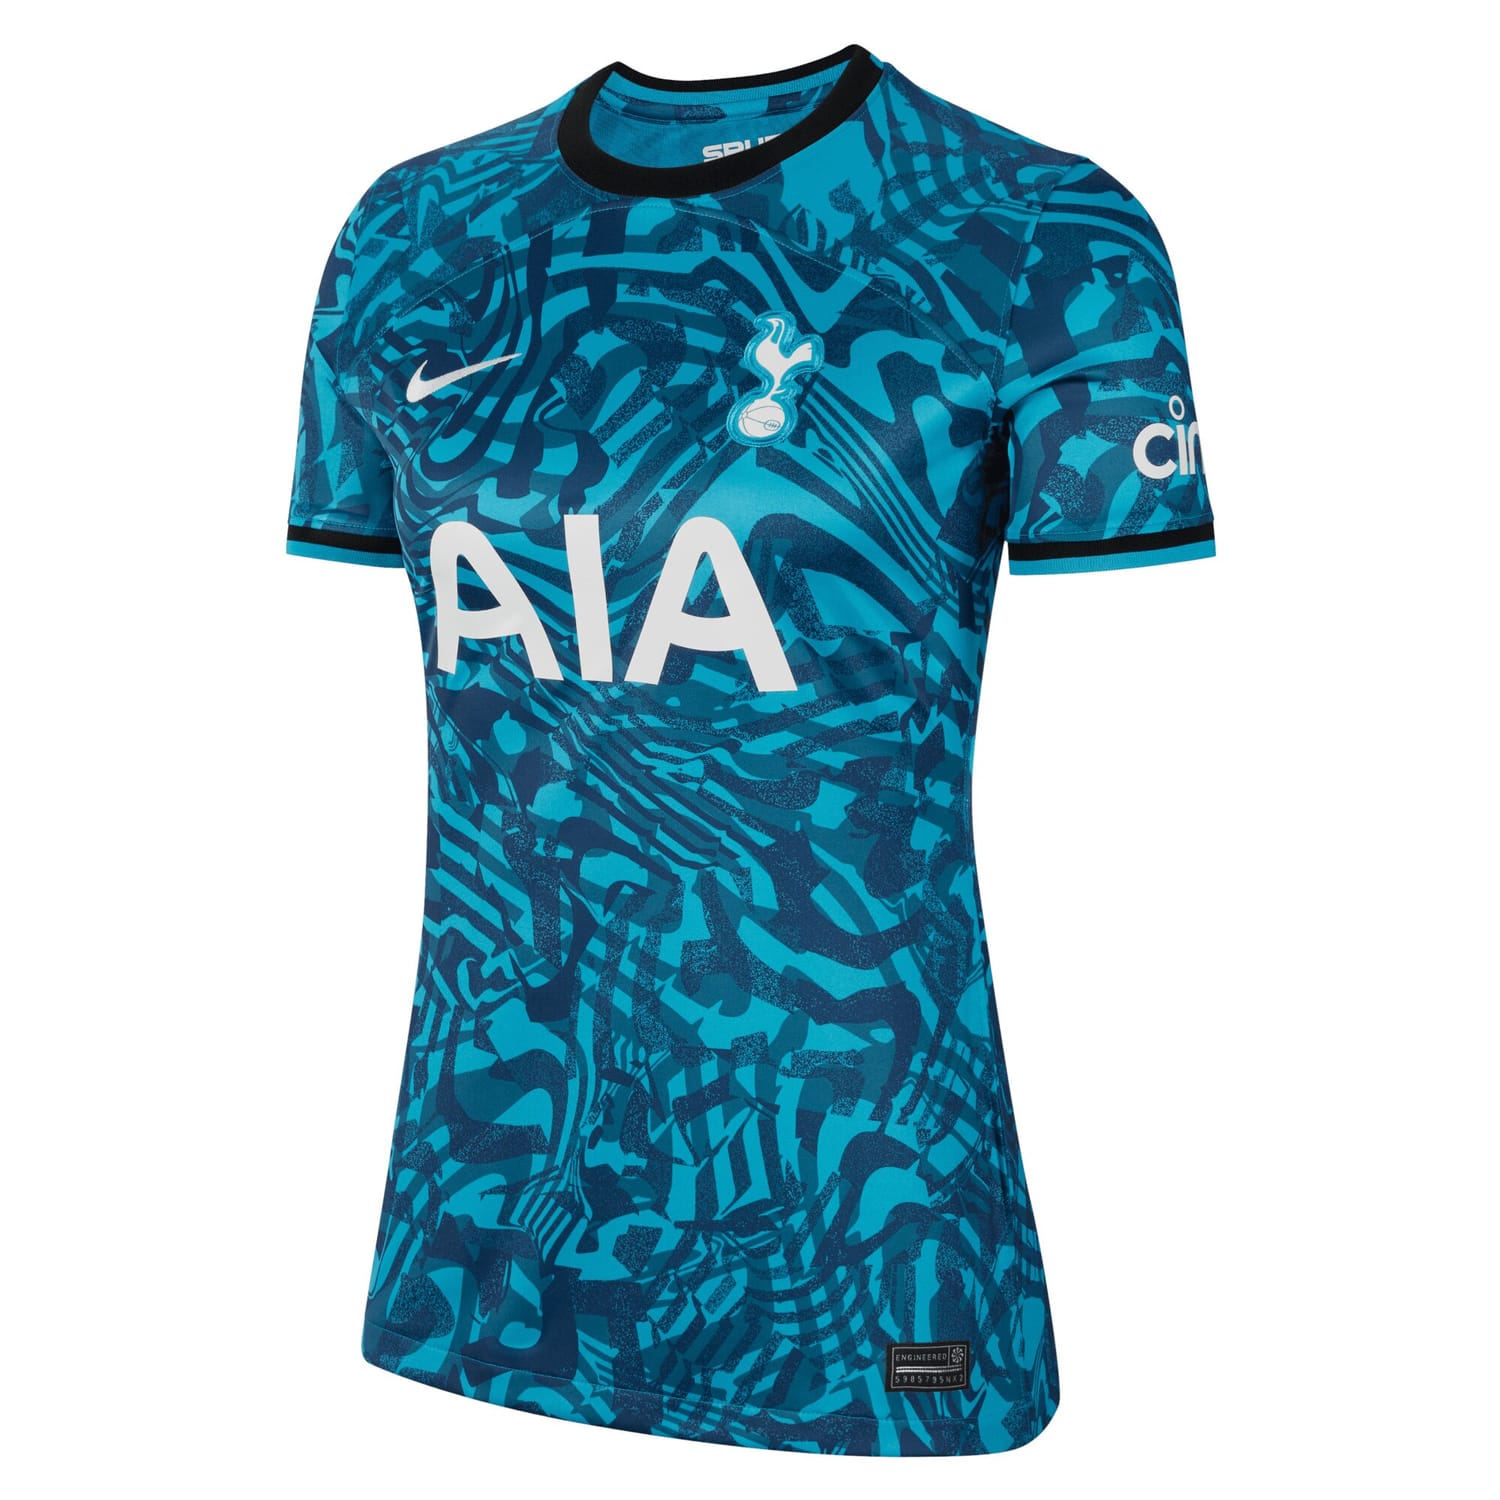 Premier League Tottenham Hotspur Third Jersey Shirt 2022-23 player Kulusevski 21 printing for Women